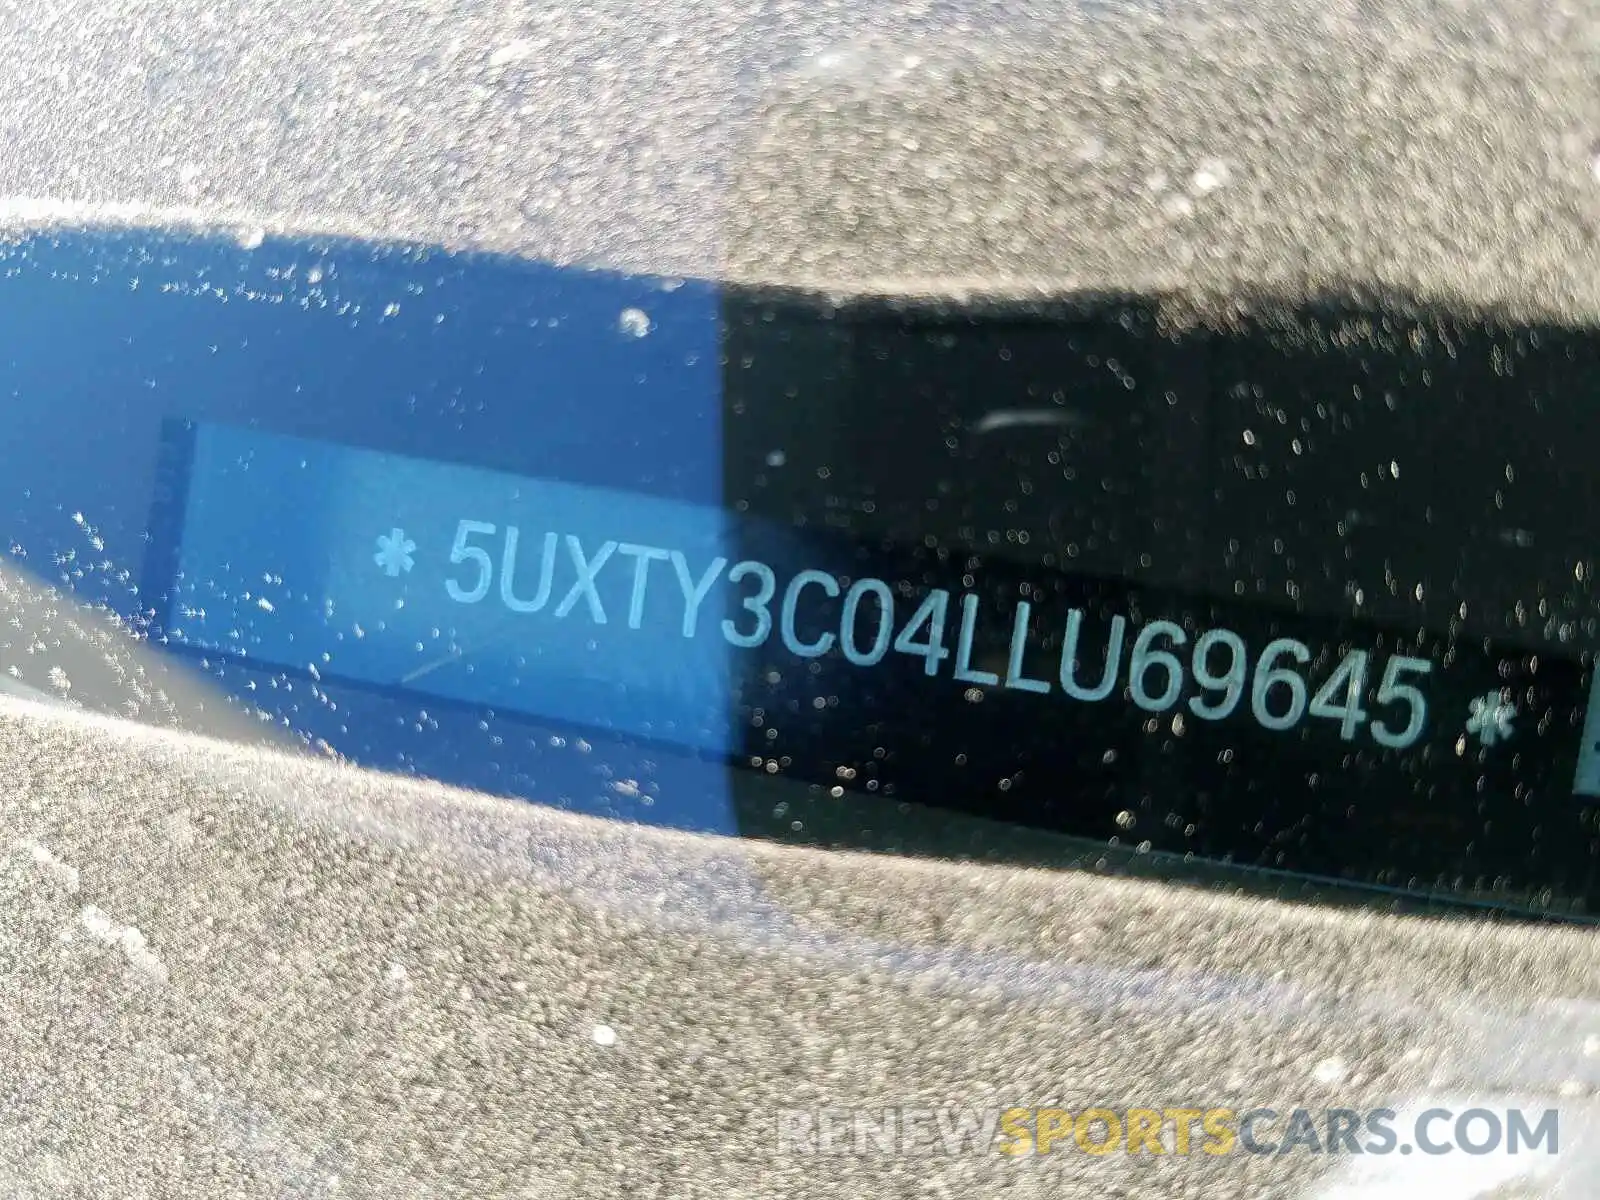 10 Photograph of a damaged car 5UXTY3C04LLU69645 BMW X3 2020